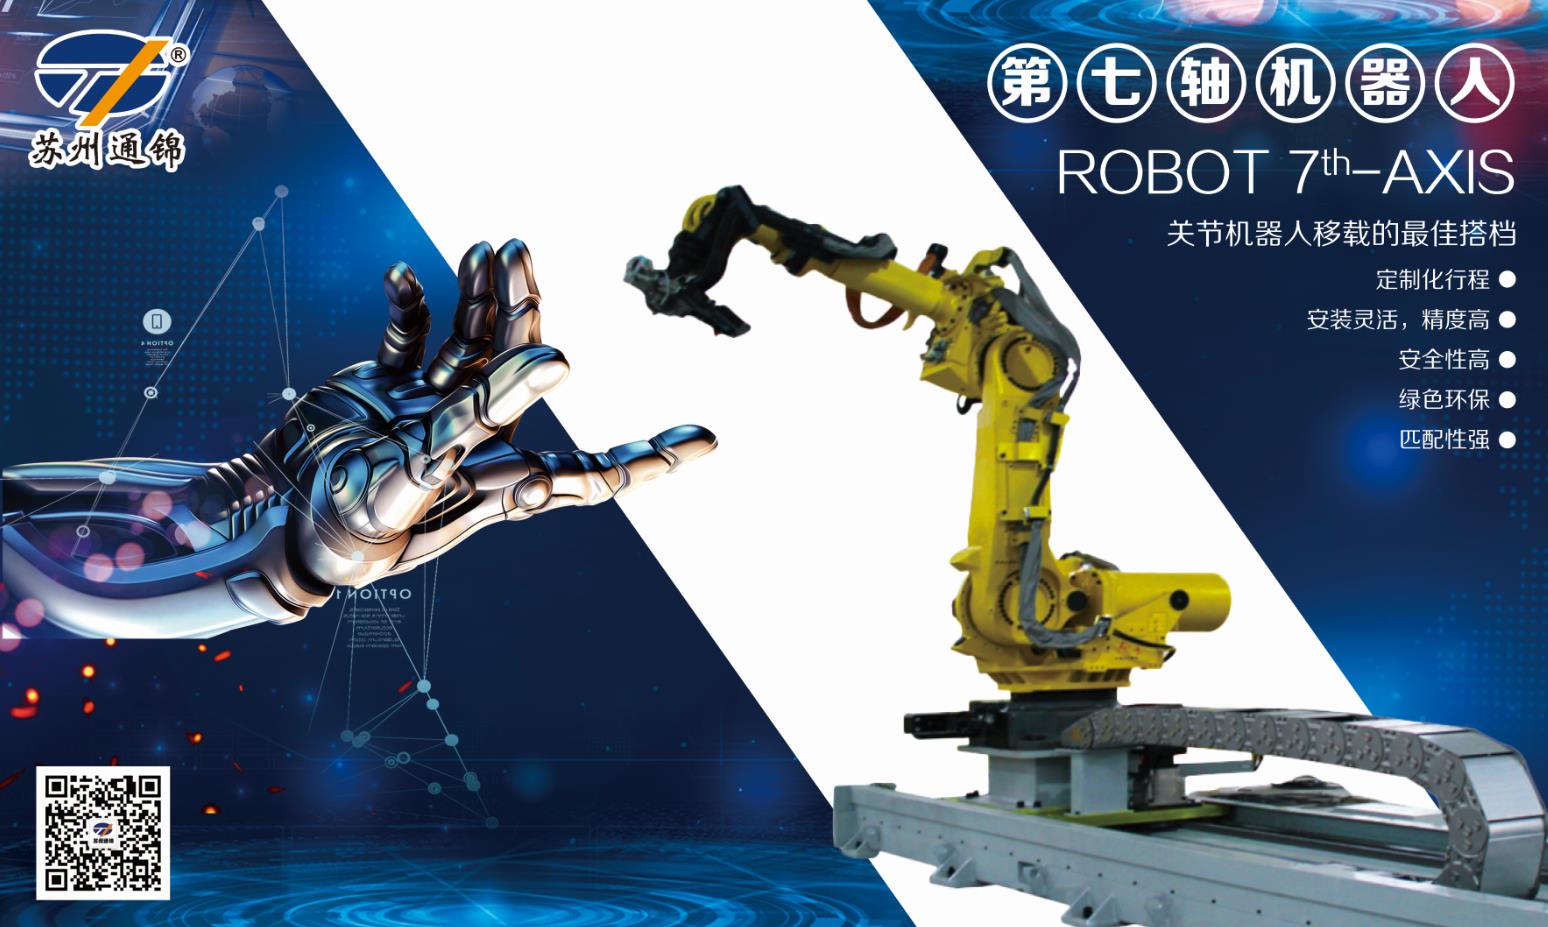 【展會專欄】2019中國工博會機器人展，我們蓄勢待發！